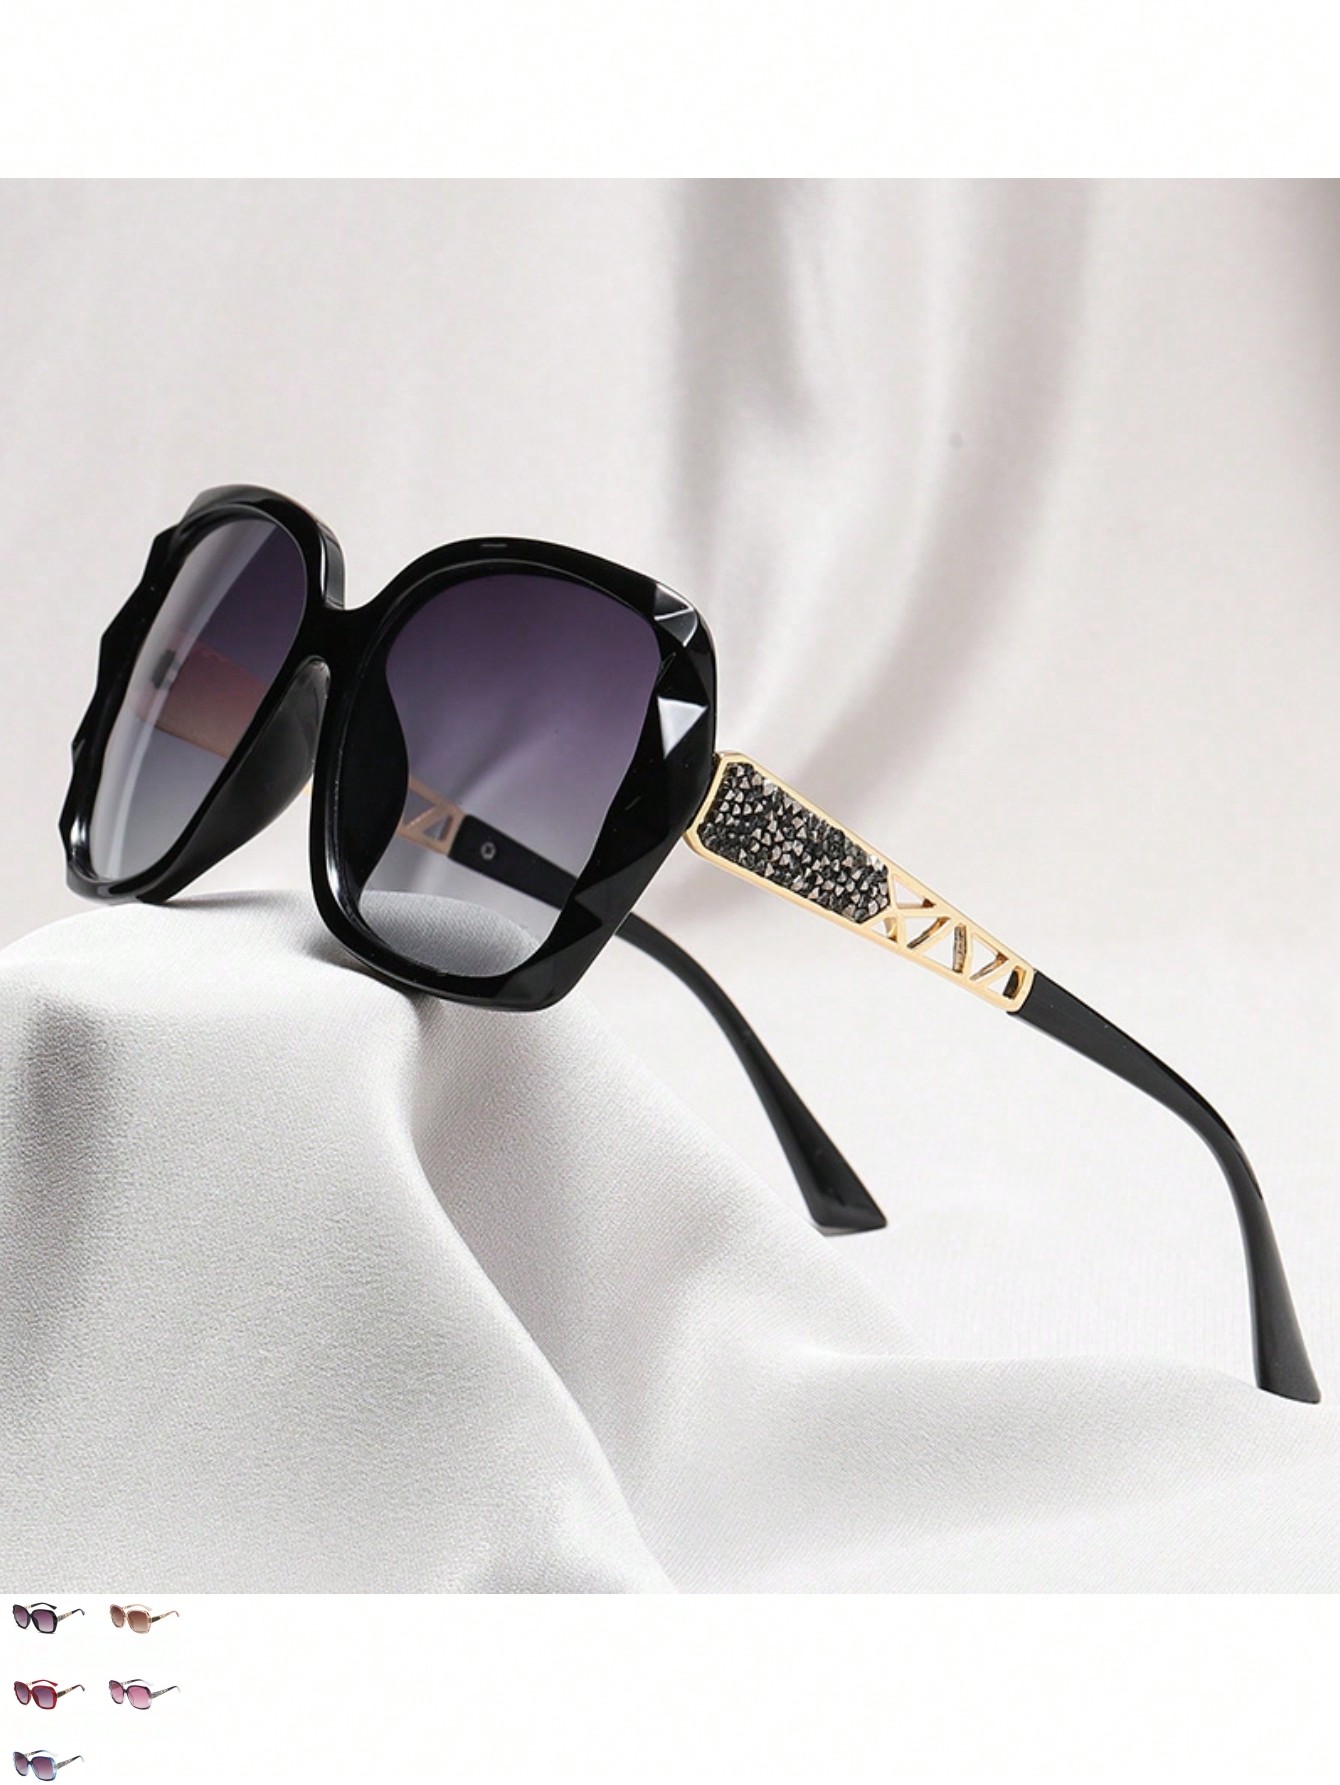 1шт женские солнцезащитные очки большого размера с защитой от ультрафиолета и стразами цена и фото